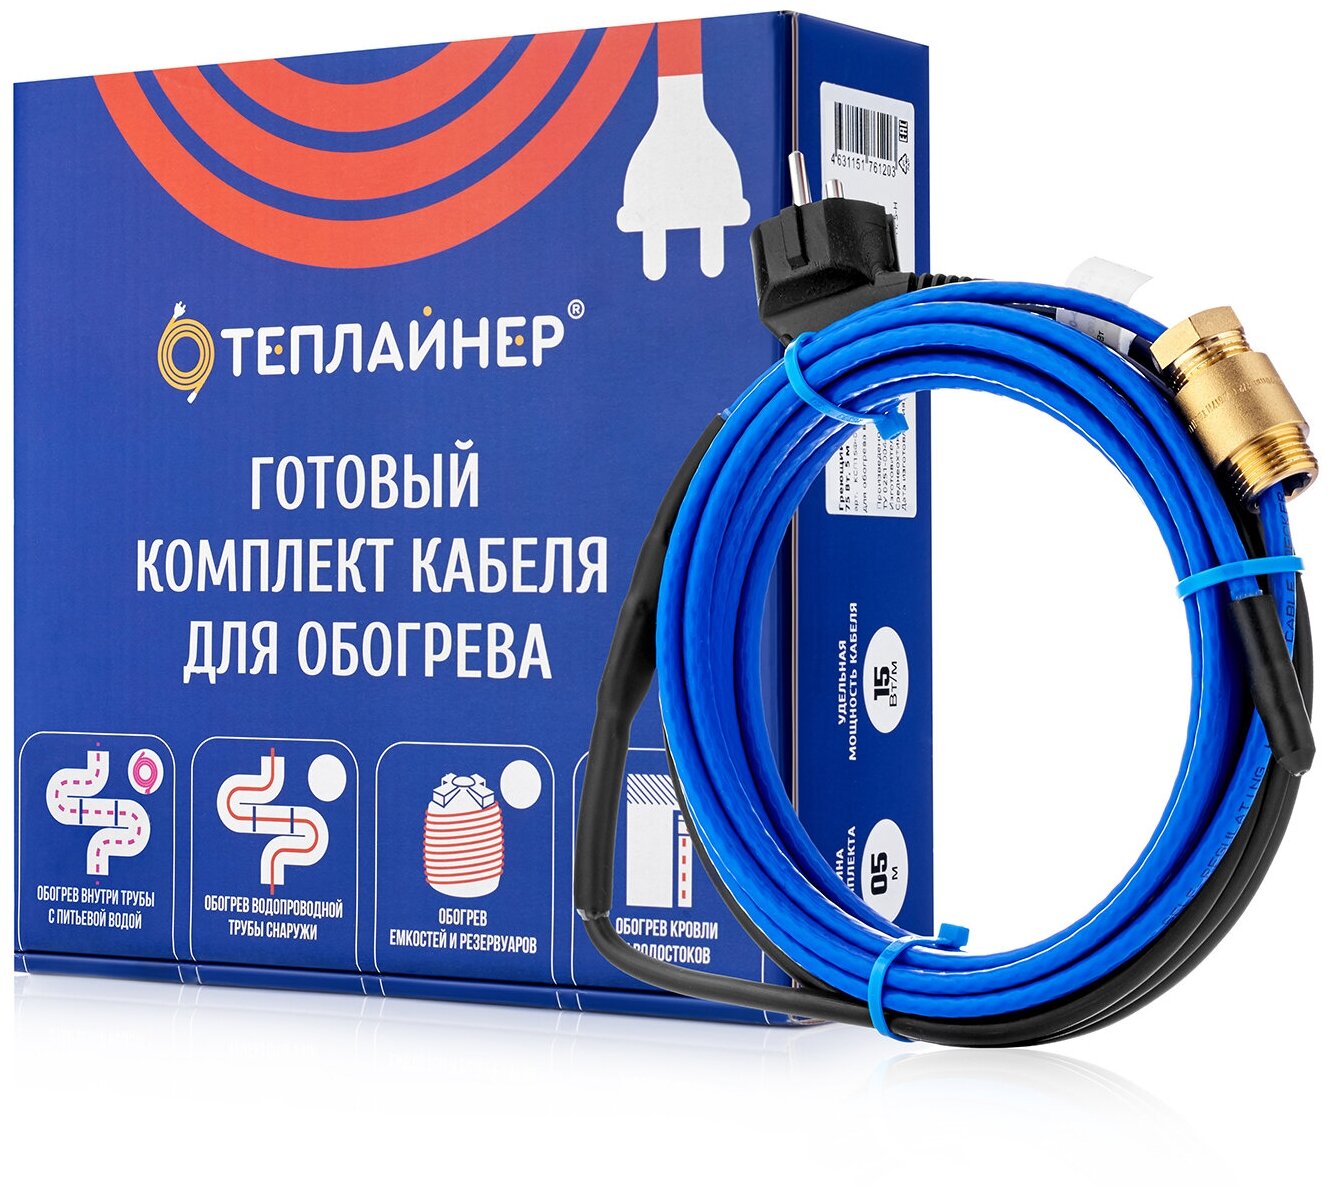 Греющий кабель теплайнер PROFI КСП-15 (2 метра) - фотография № 1